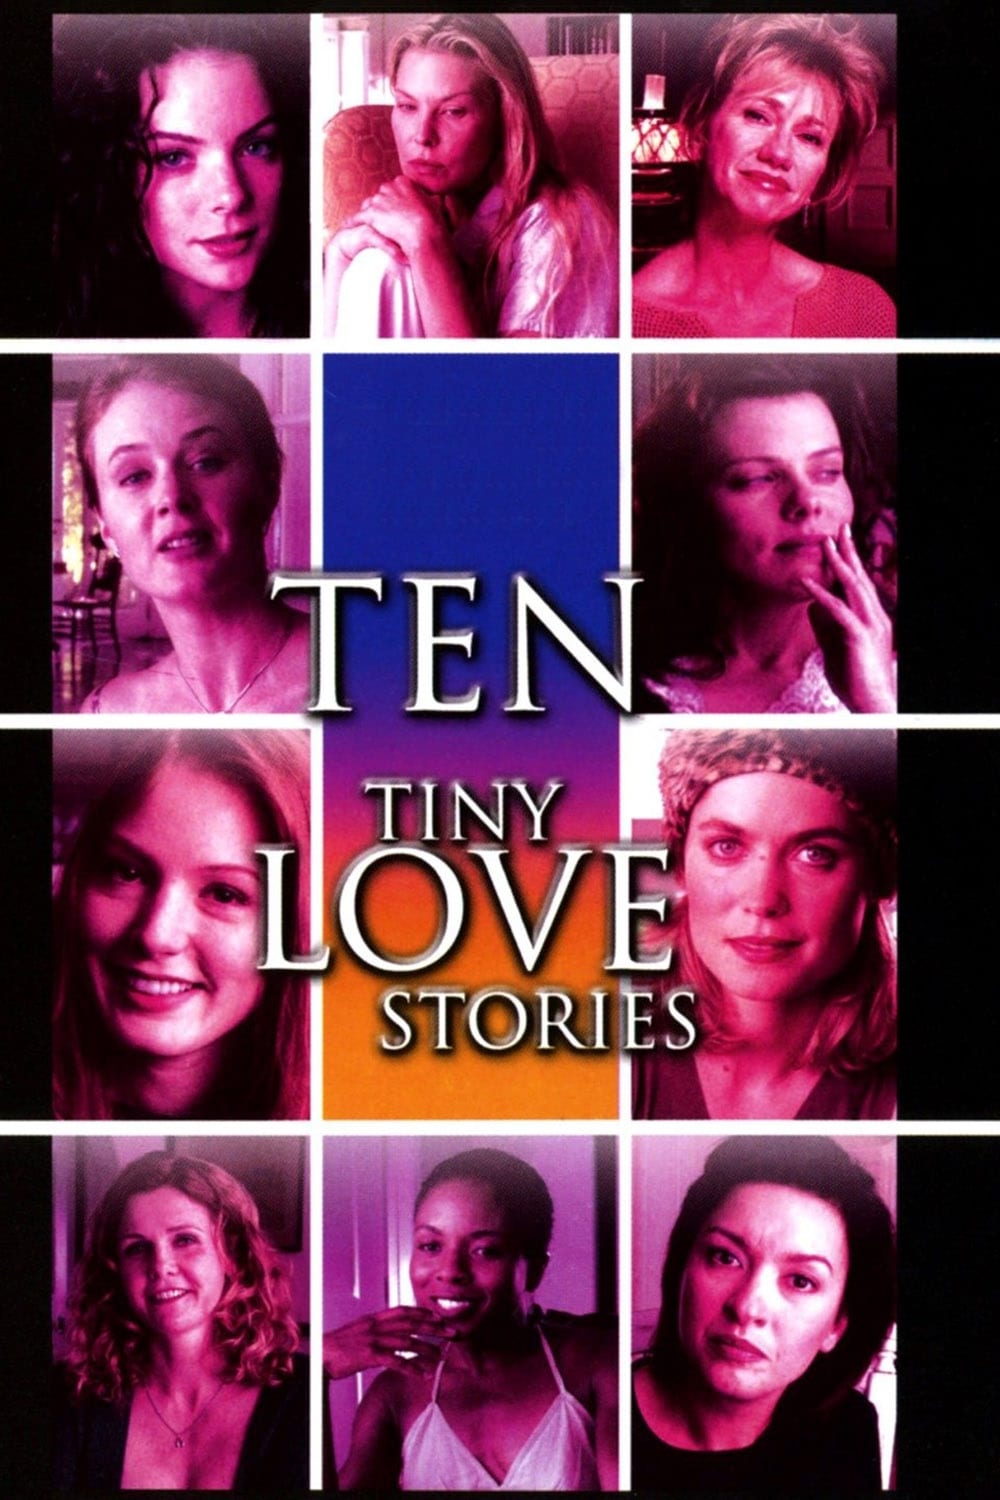 10 Tiny Love Stories (2002)